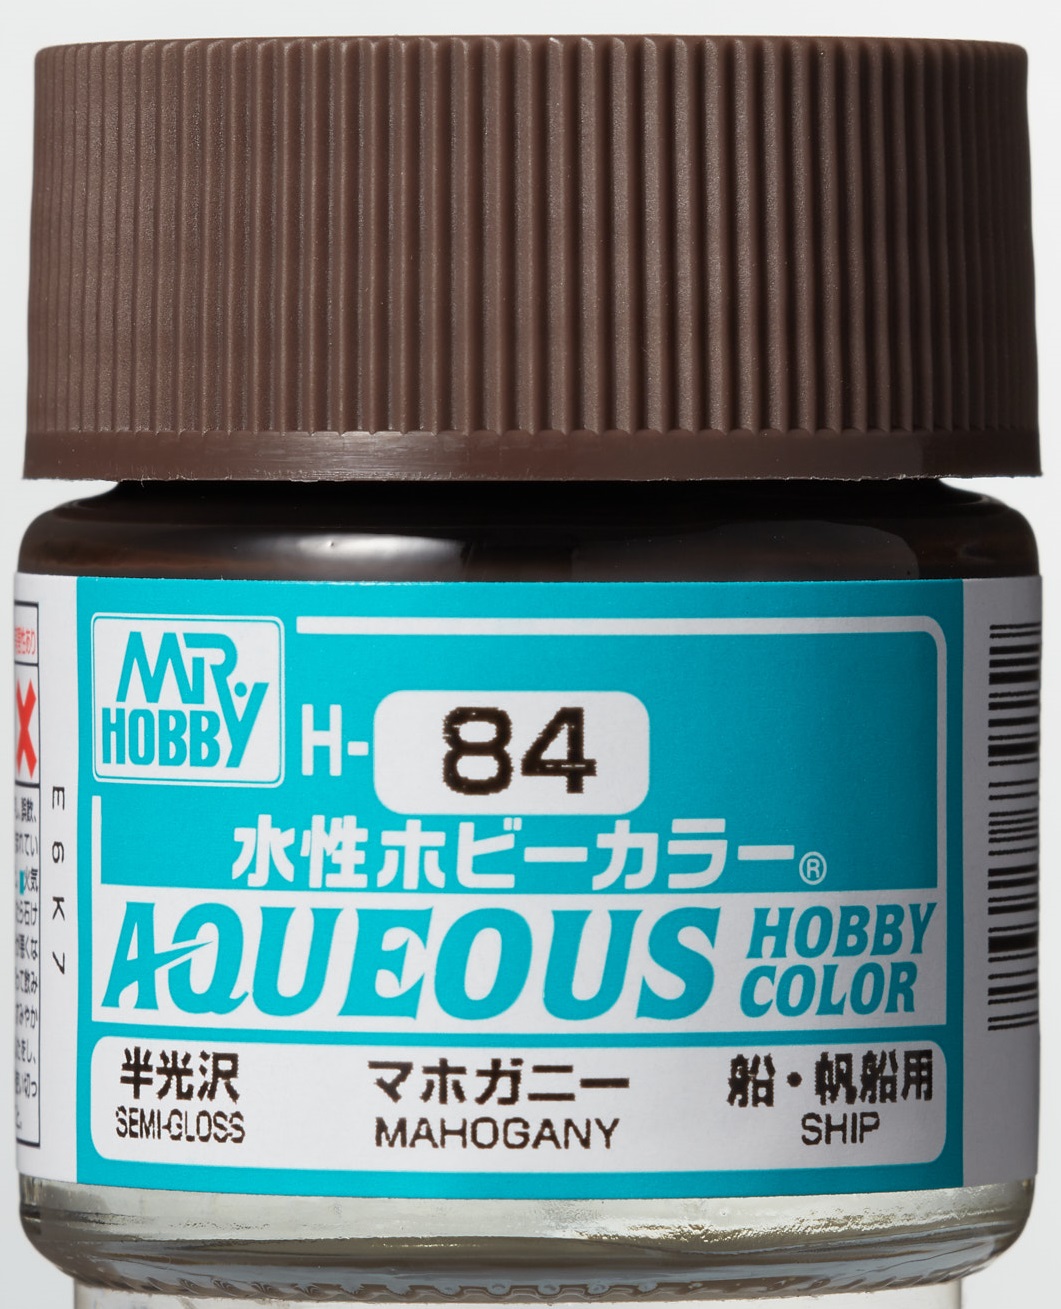 Mr. Aqueous Hobby Color - Mahogany - H84 - Mahagony